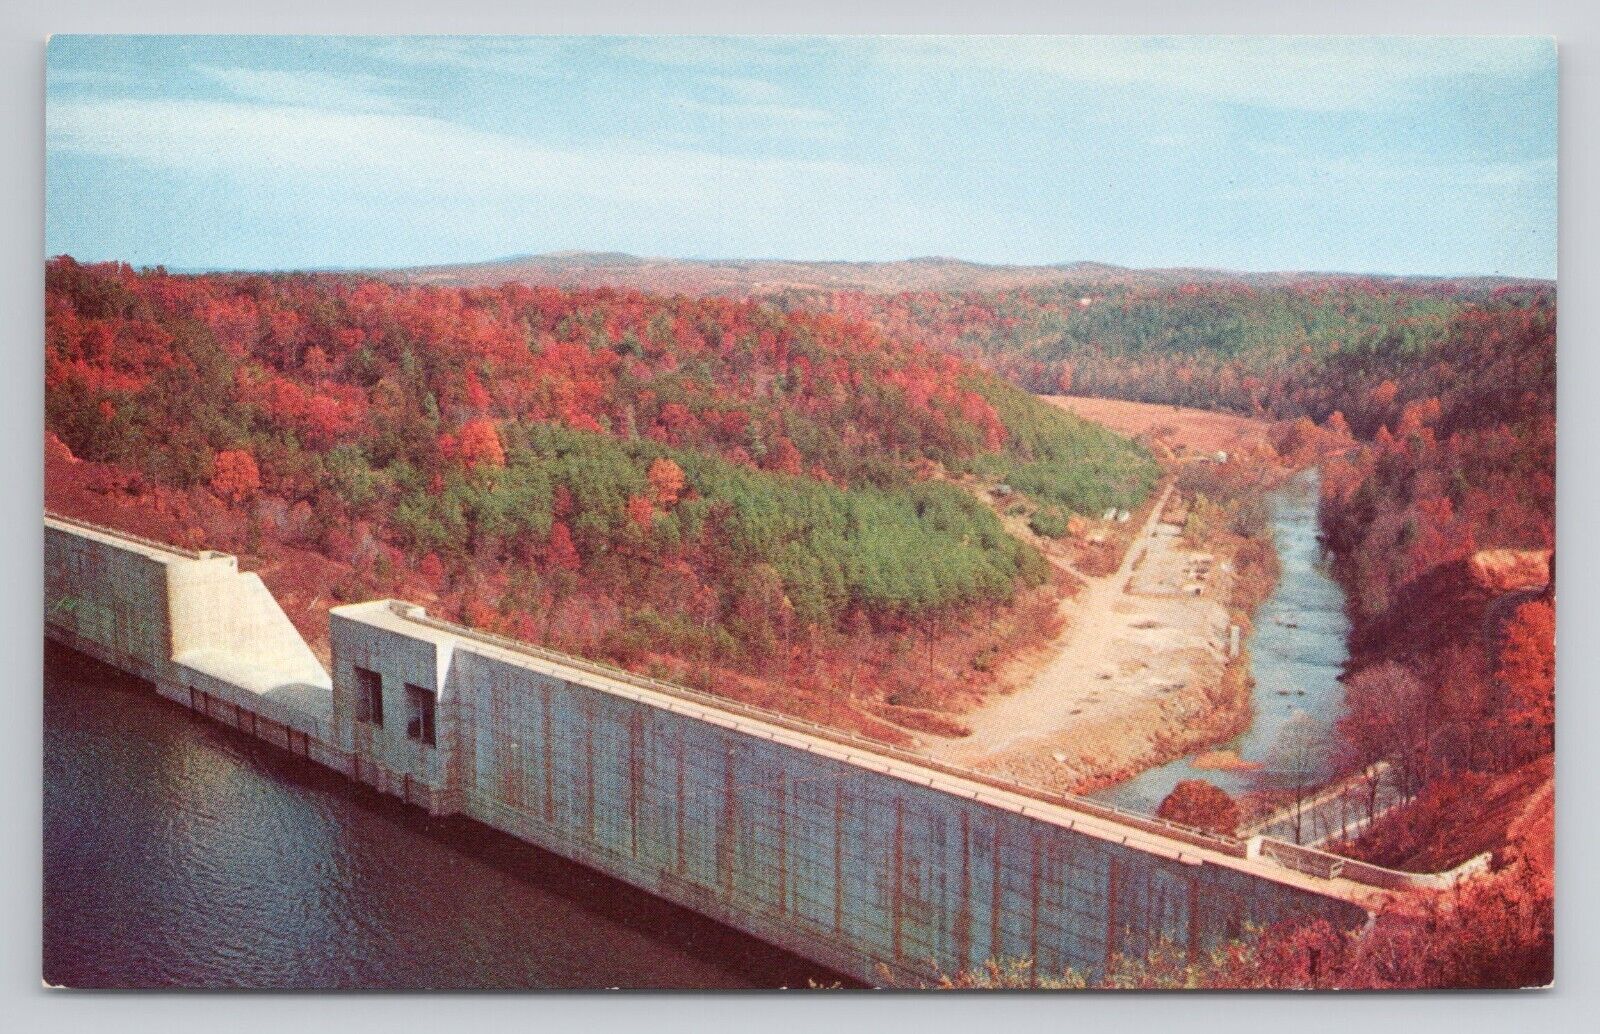 Philpott Dam, west of Bassett Virginia Postcard 1943